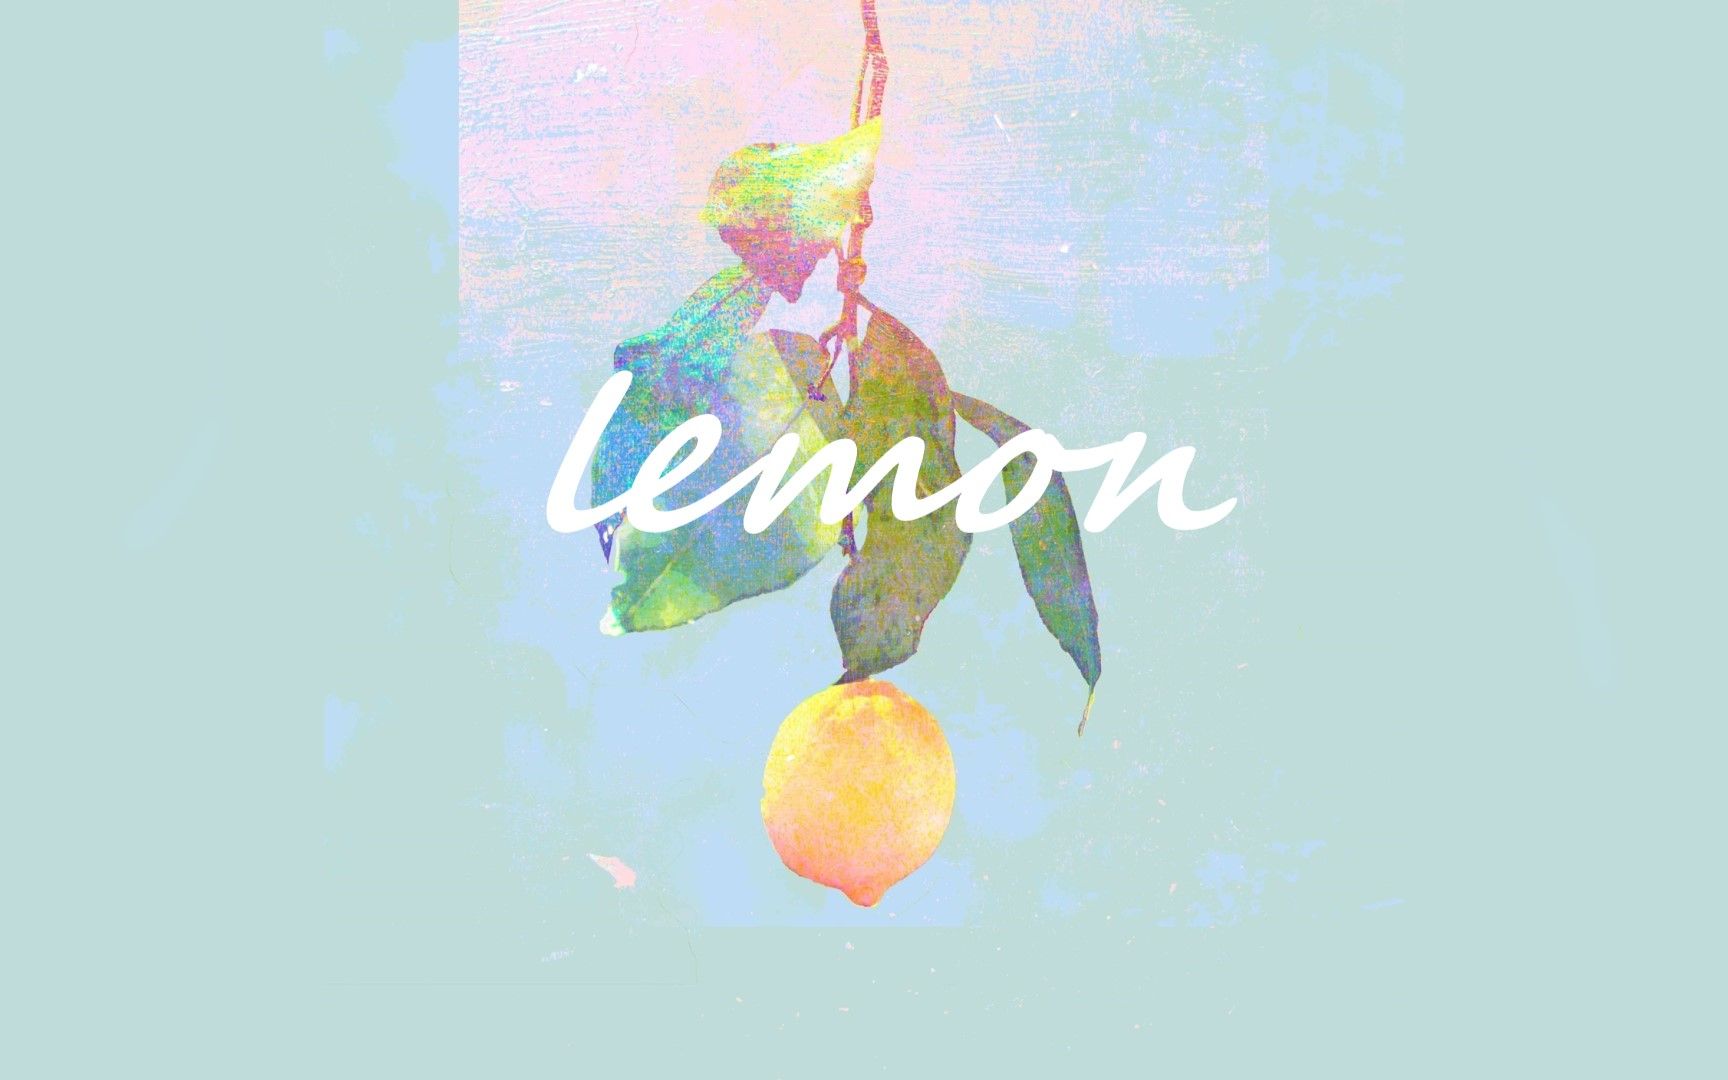 lemon米津玄师壁纸图片